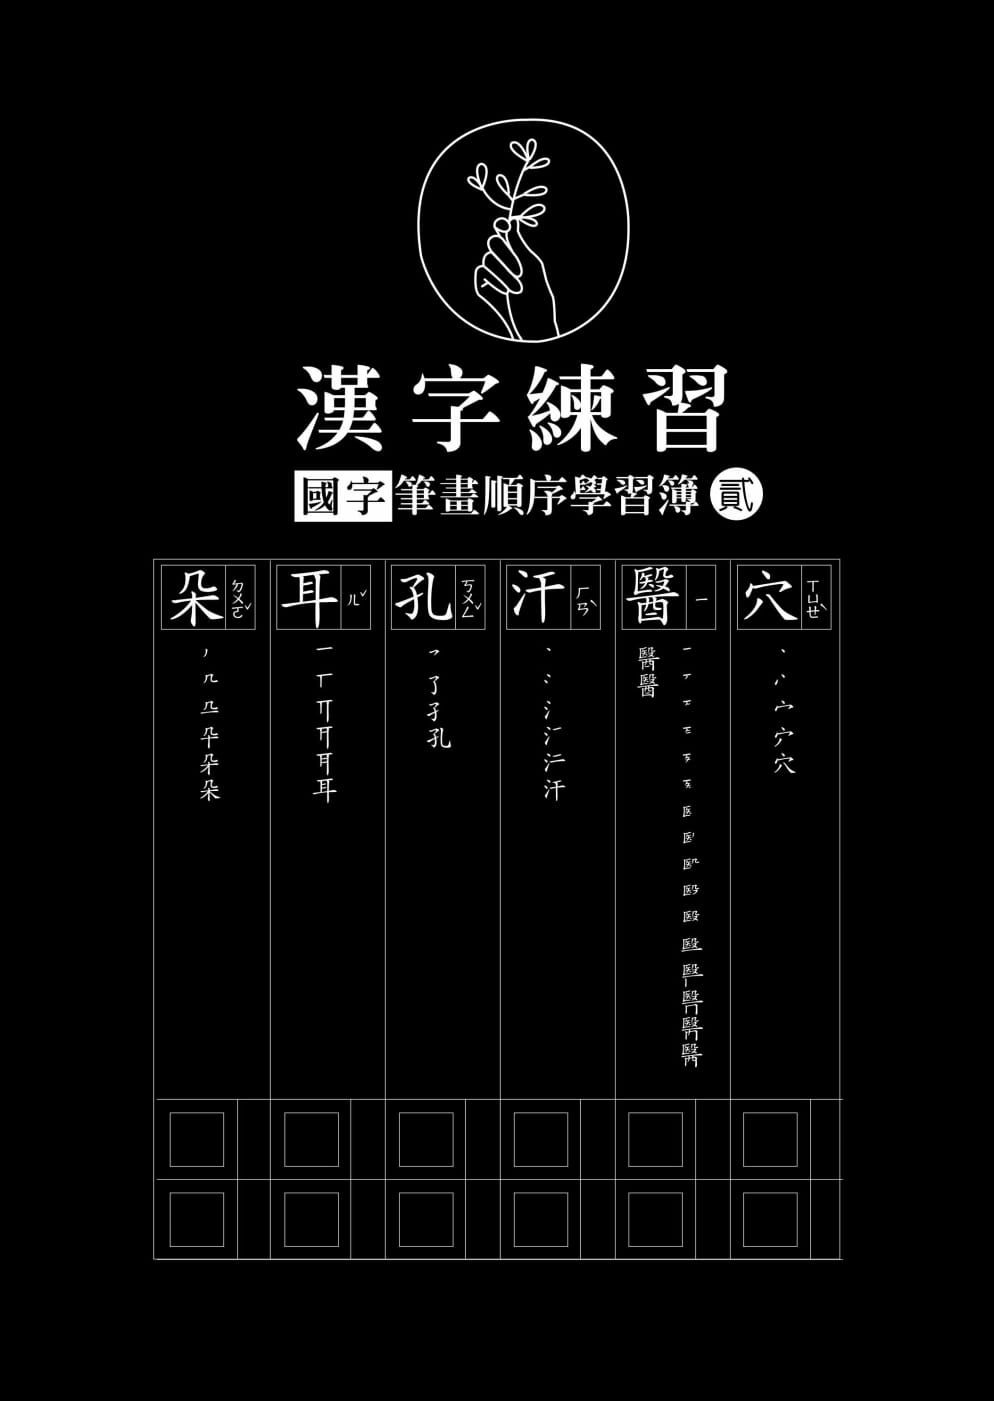 漢字練習國字筆畫順序練習簿